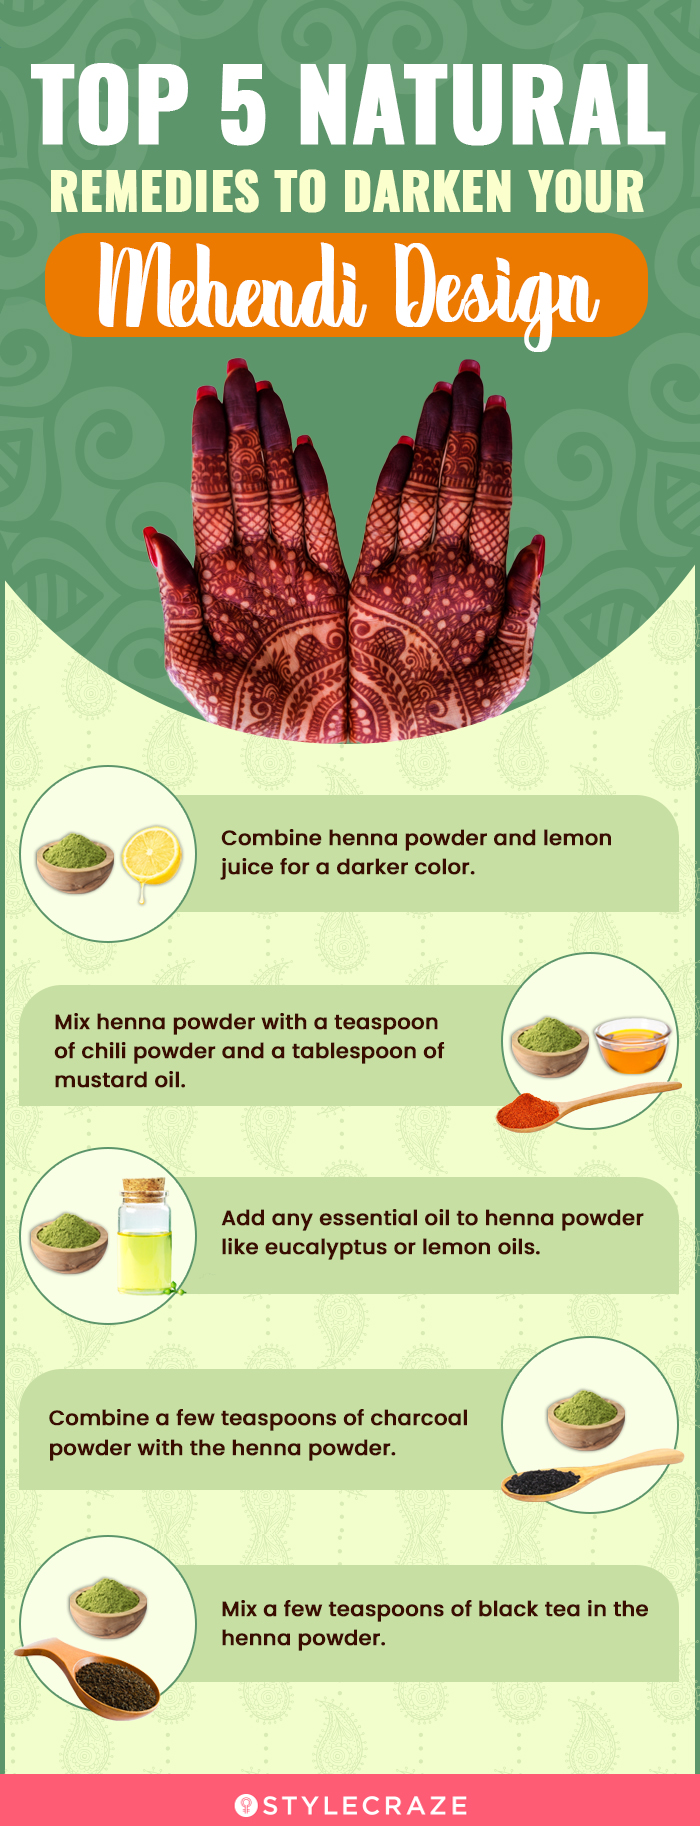 top 5 natural remedies to darken your mehendi design [infographic]